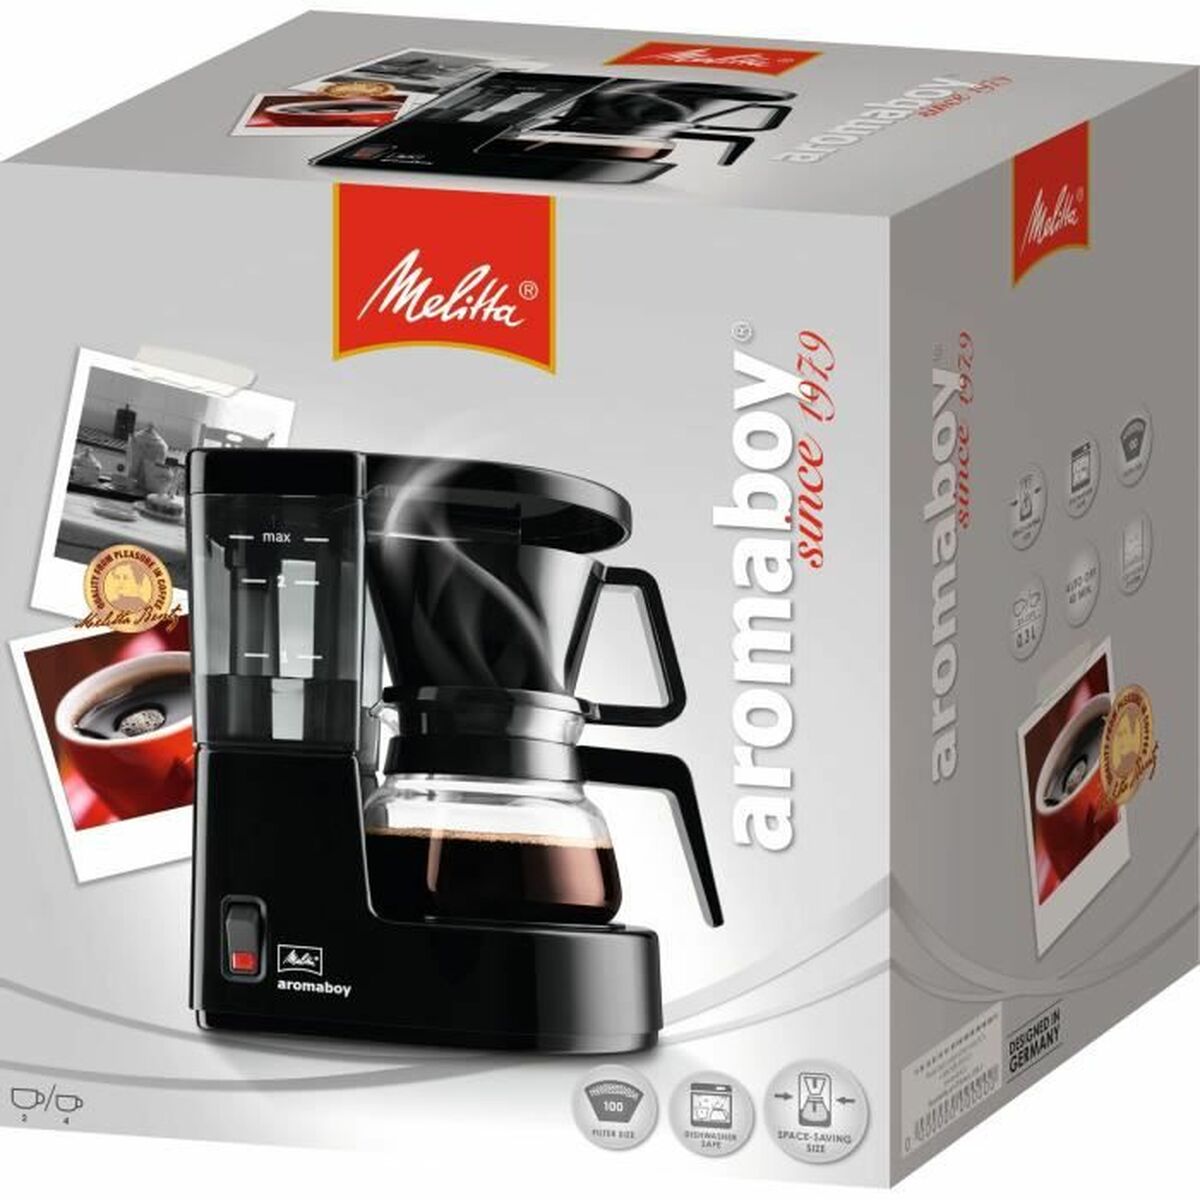 Drip Coffee Machine Melitta Aromaboy 500 W Nero 500 W